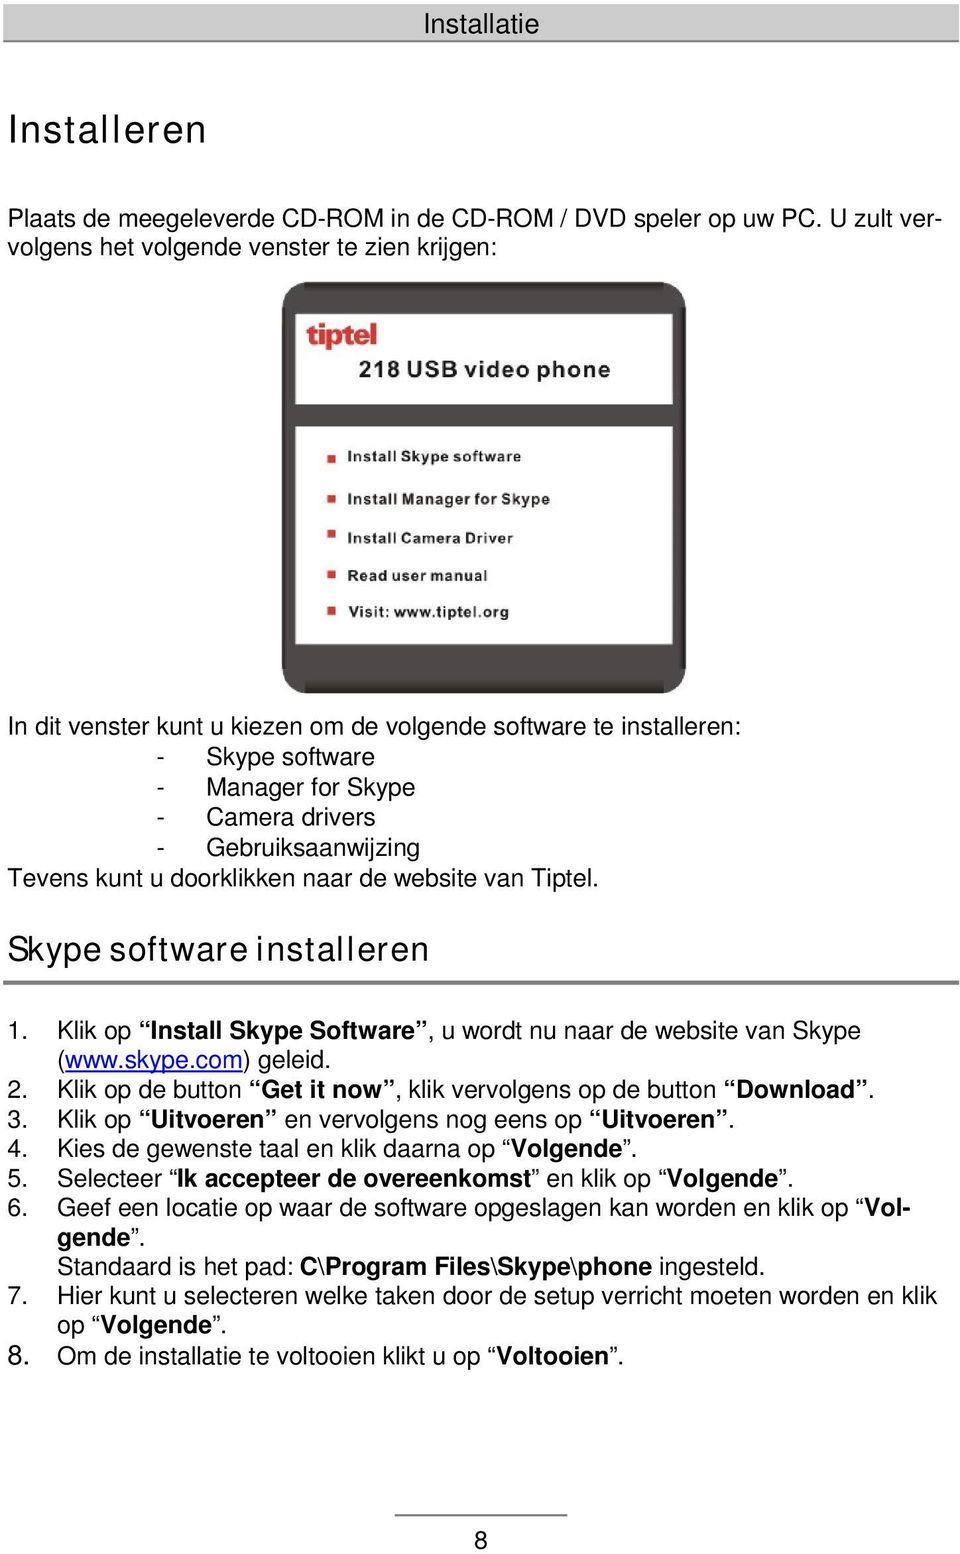 Tevens kunt u doorklikken naar de website van Tiptel. Skype software installeren 1. Klik op Install Skype Software, u wordt nu naar de website van Skype (www.skype.com) geleid. 2.